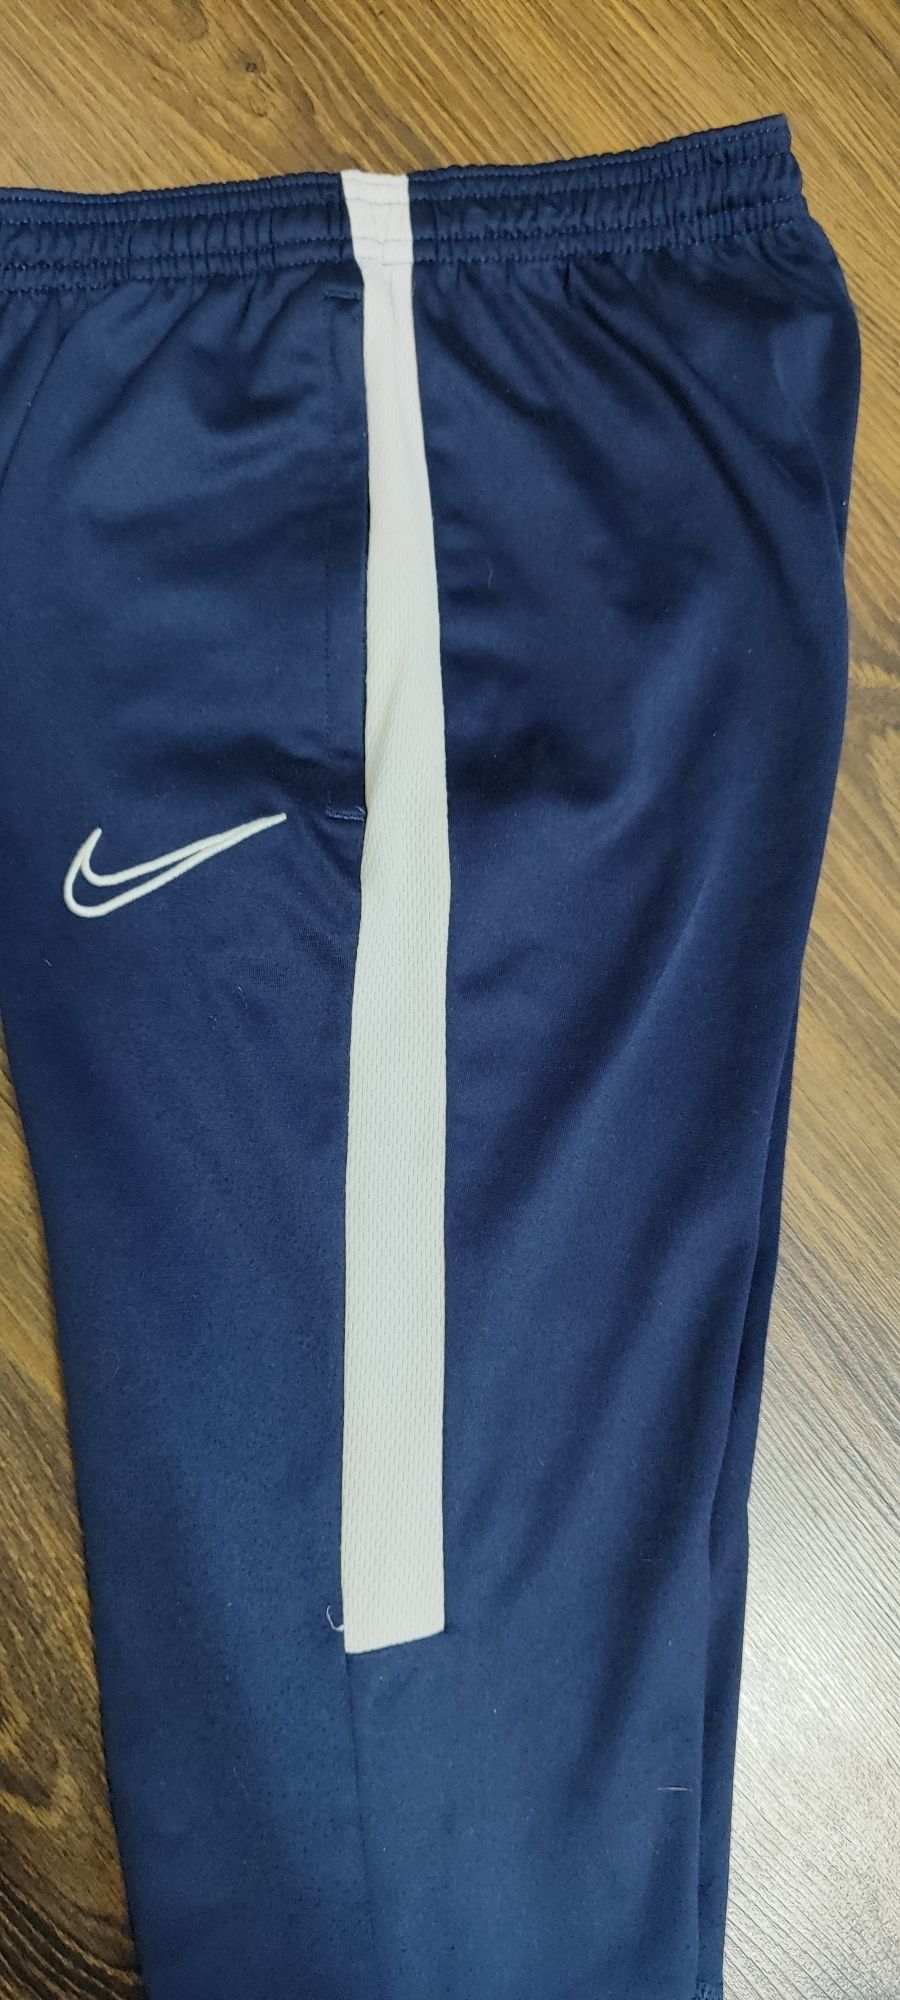 Штаны Nike для футбола